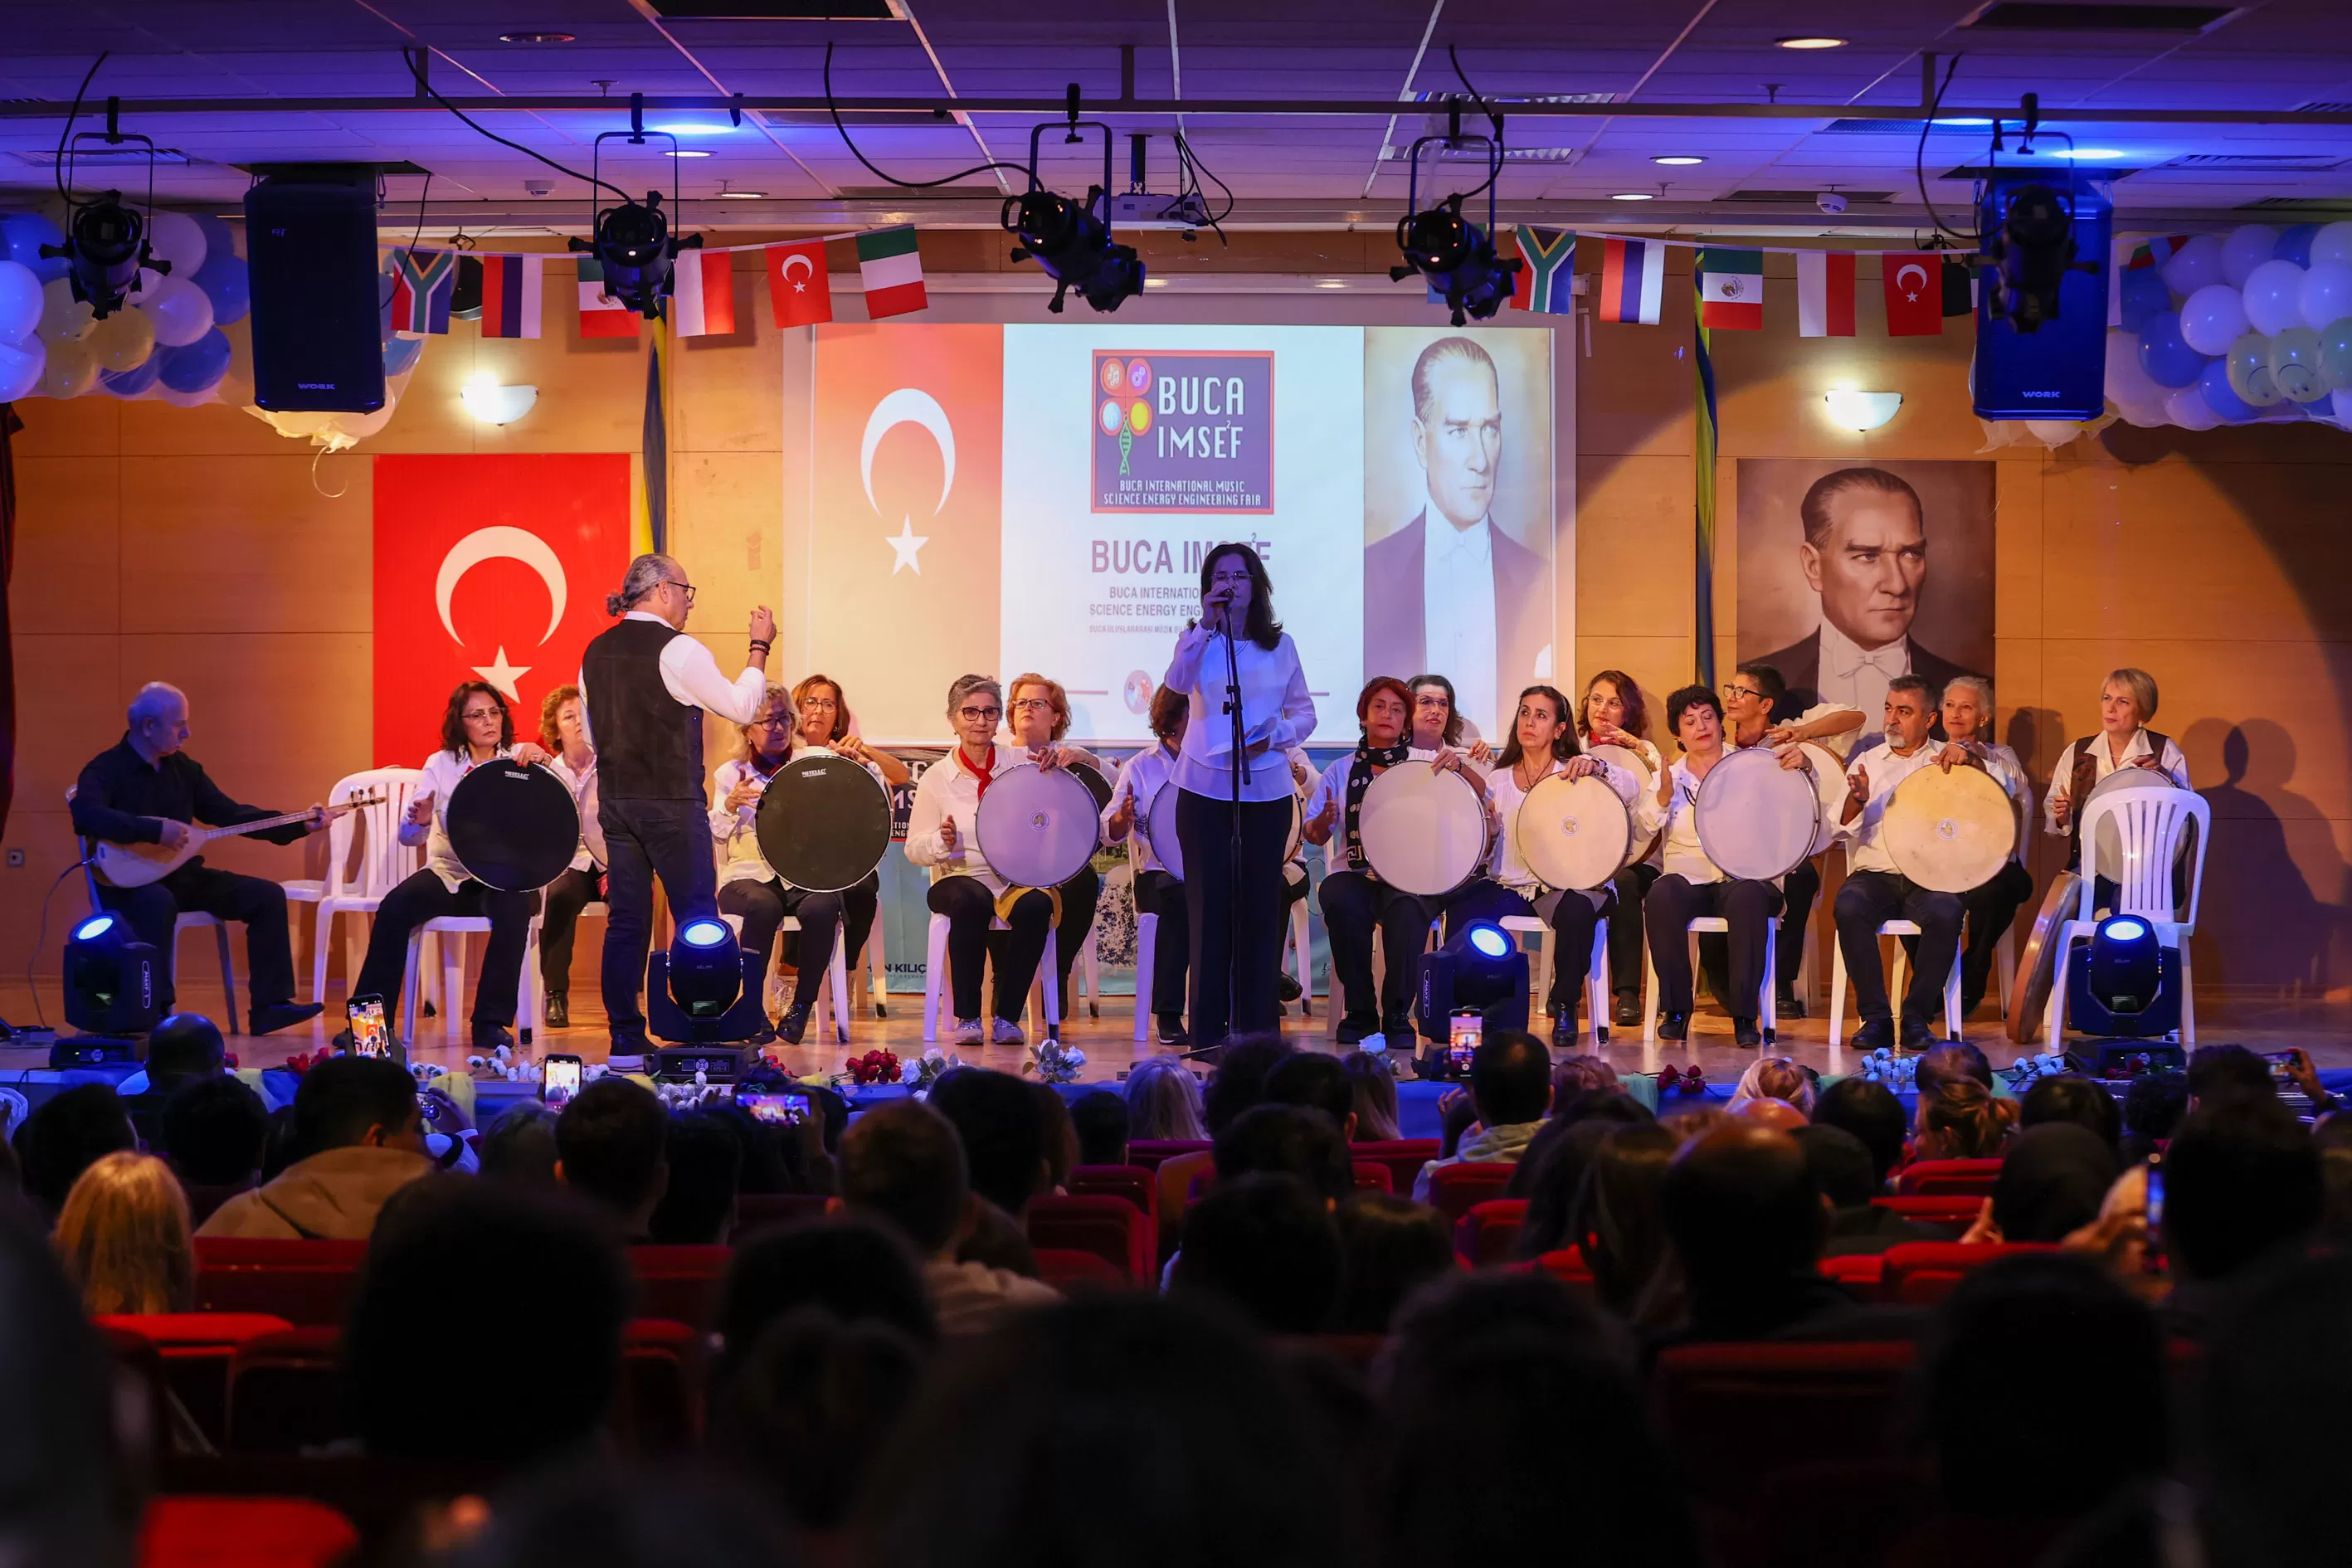 İzmir'de düzenlenen Buca IMSEF Bilim ve Sanat Fuarı'nda, 12 farklı ülkeden 325 öğrenci projelerini sergiledi. 